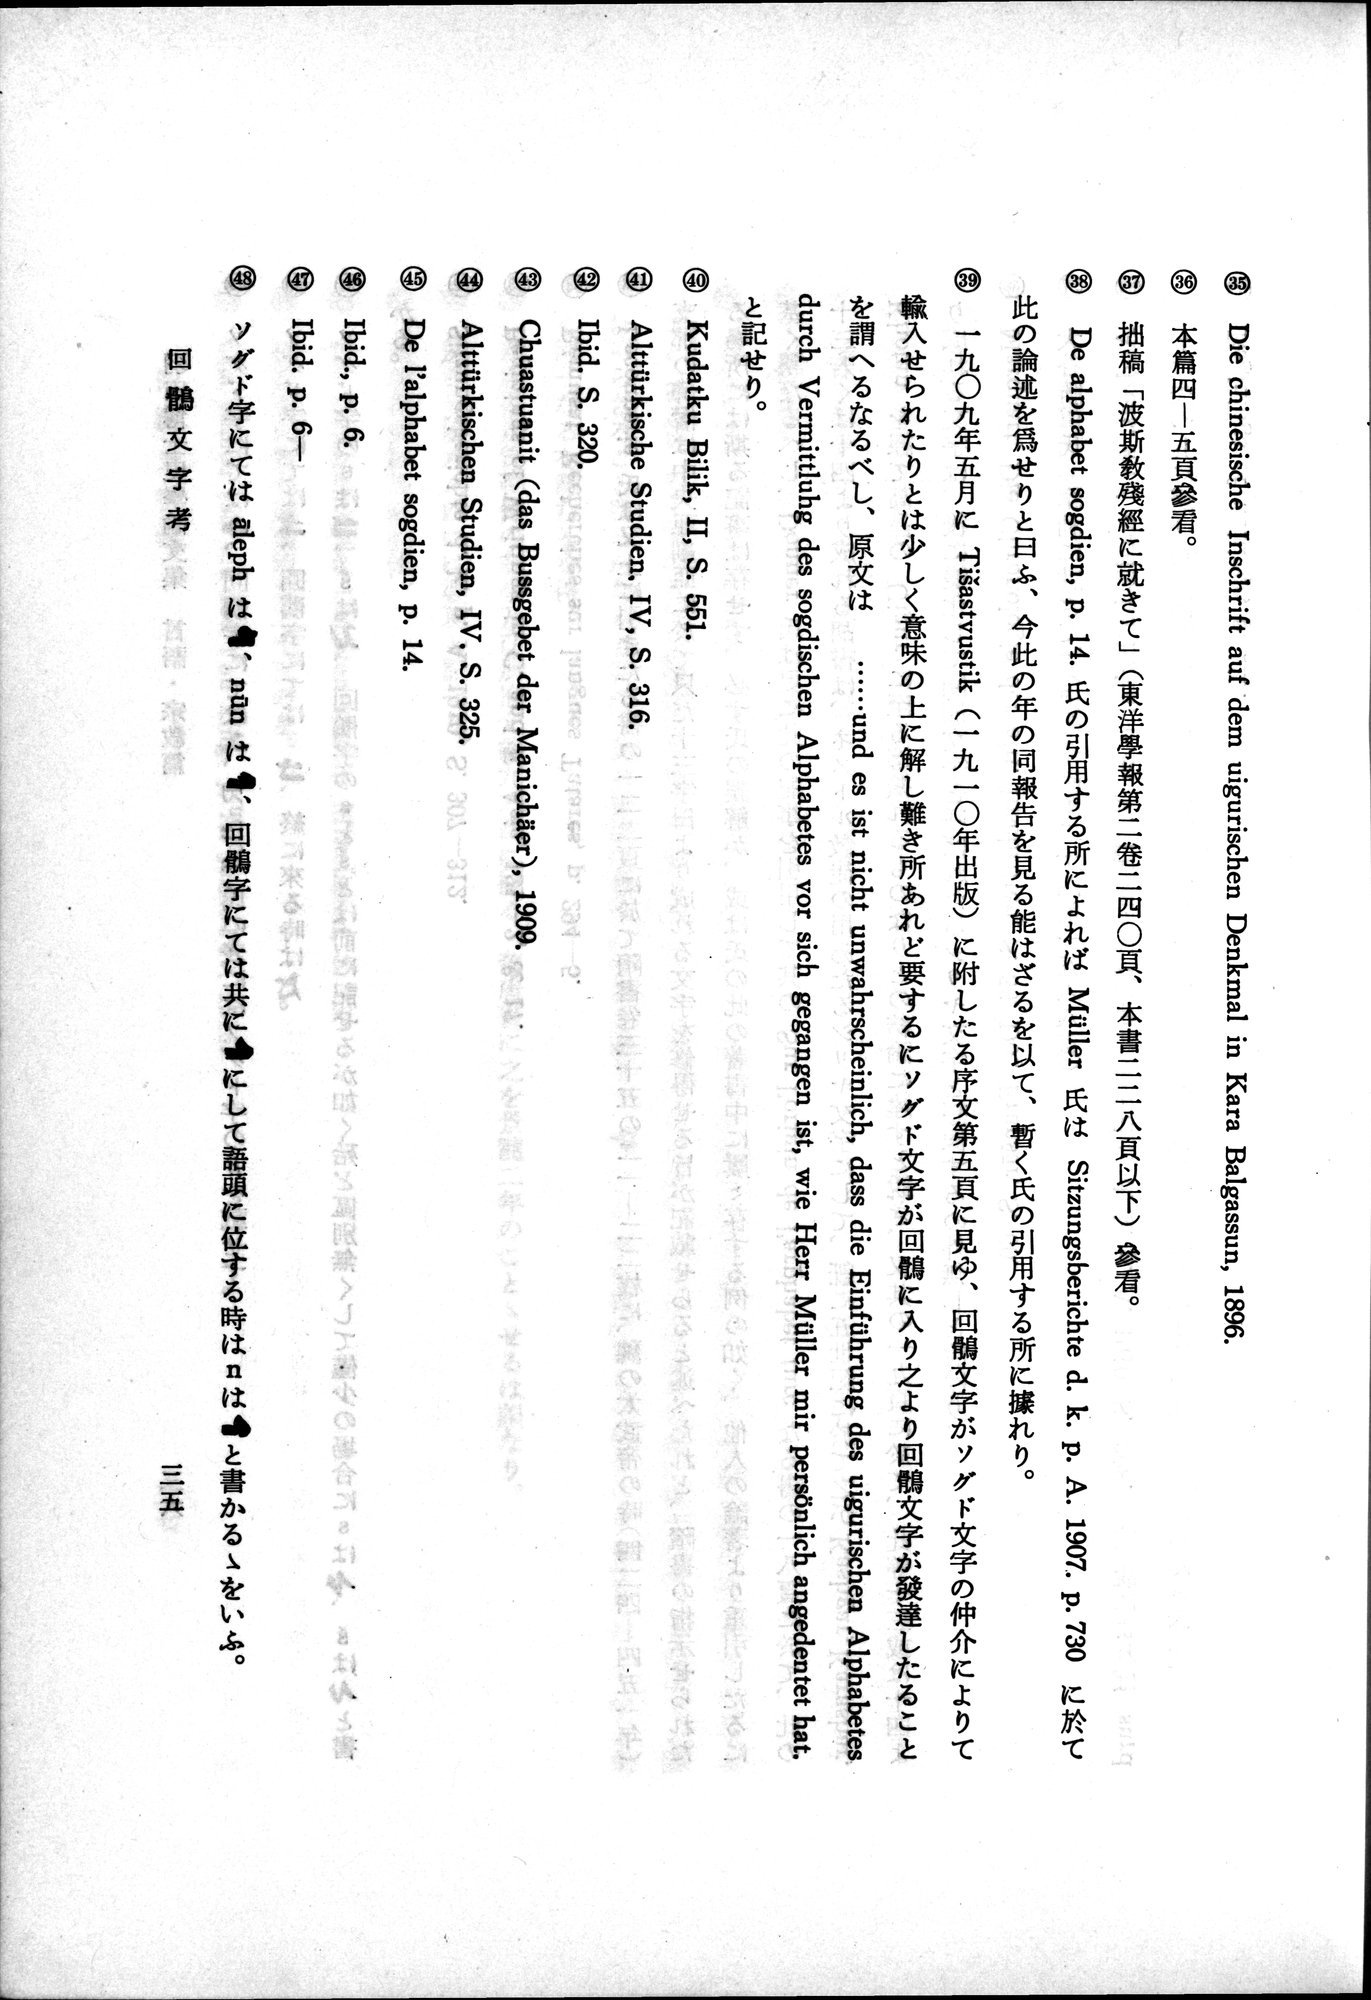 羽田博士史学論文集 : vol.2 / Page 85 (Grayscale High Resolution Image)